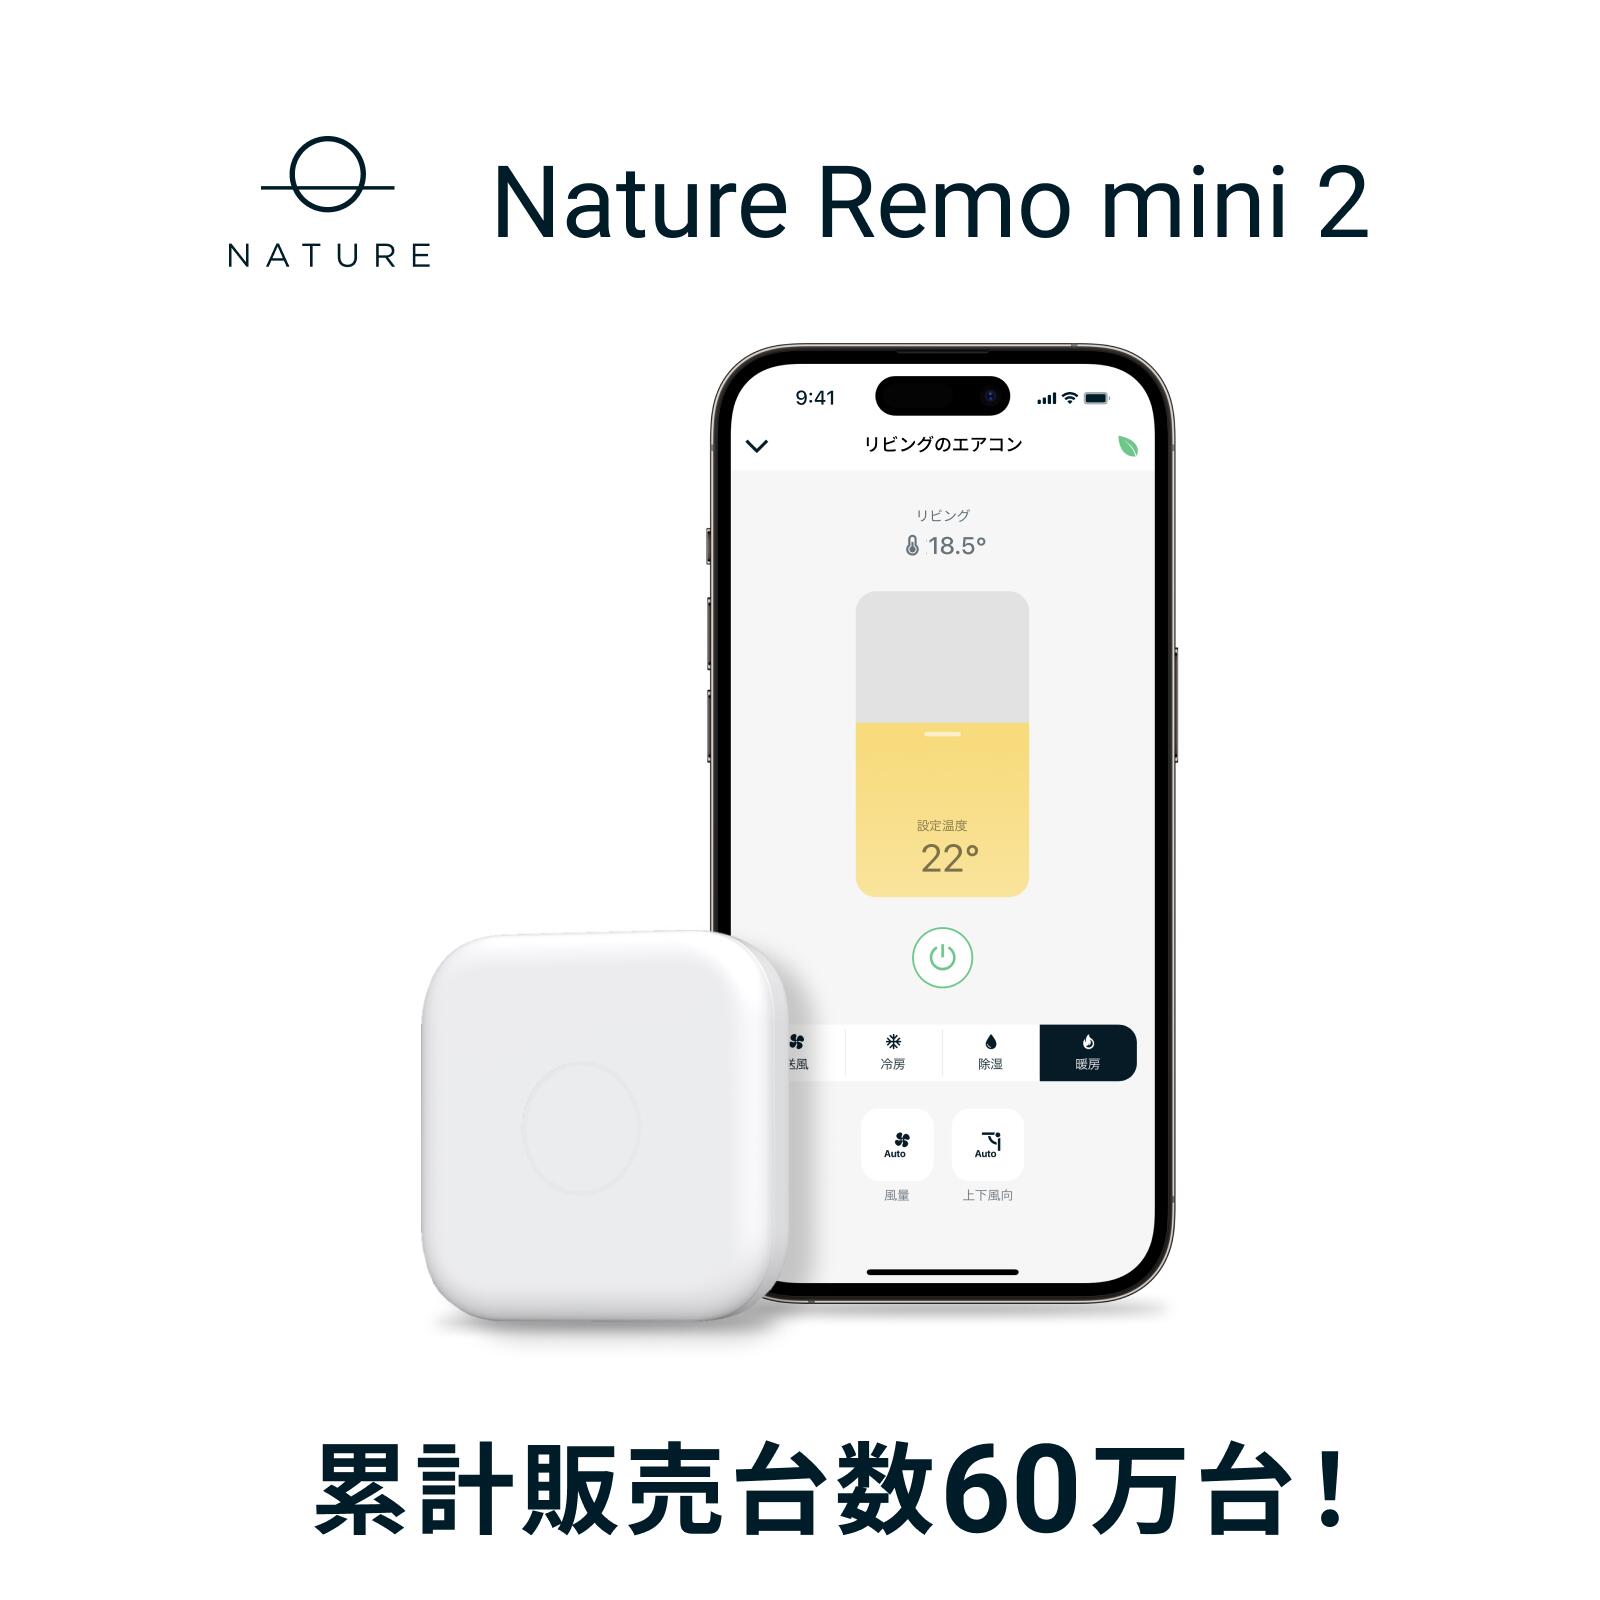 60万台突破 【公式】スマートリモコン Nature Remo mini 2 ネイチャー